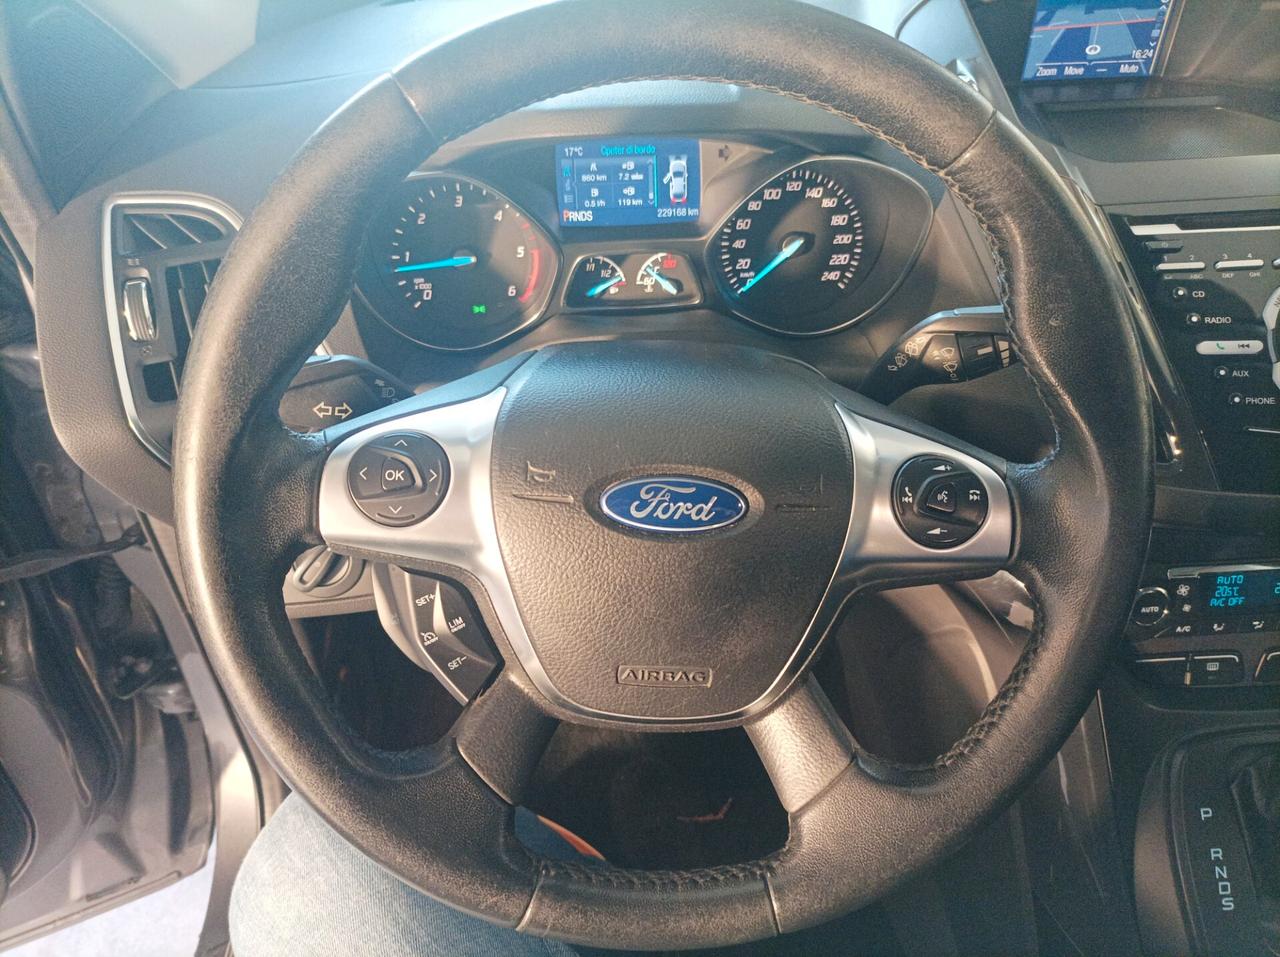 Ford Kuga 2.0 TDCI 163 CV 4WD Powershift Titanium 03/2014